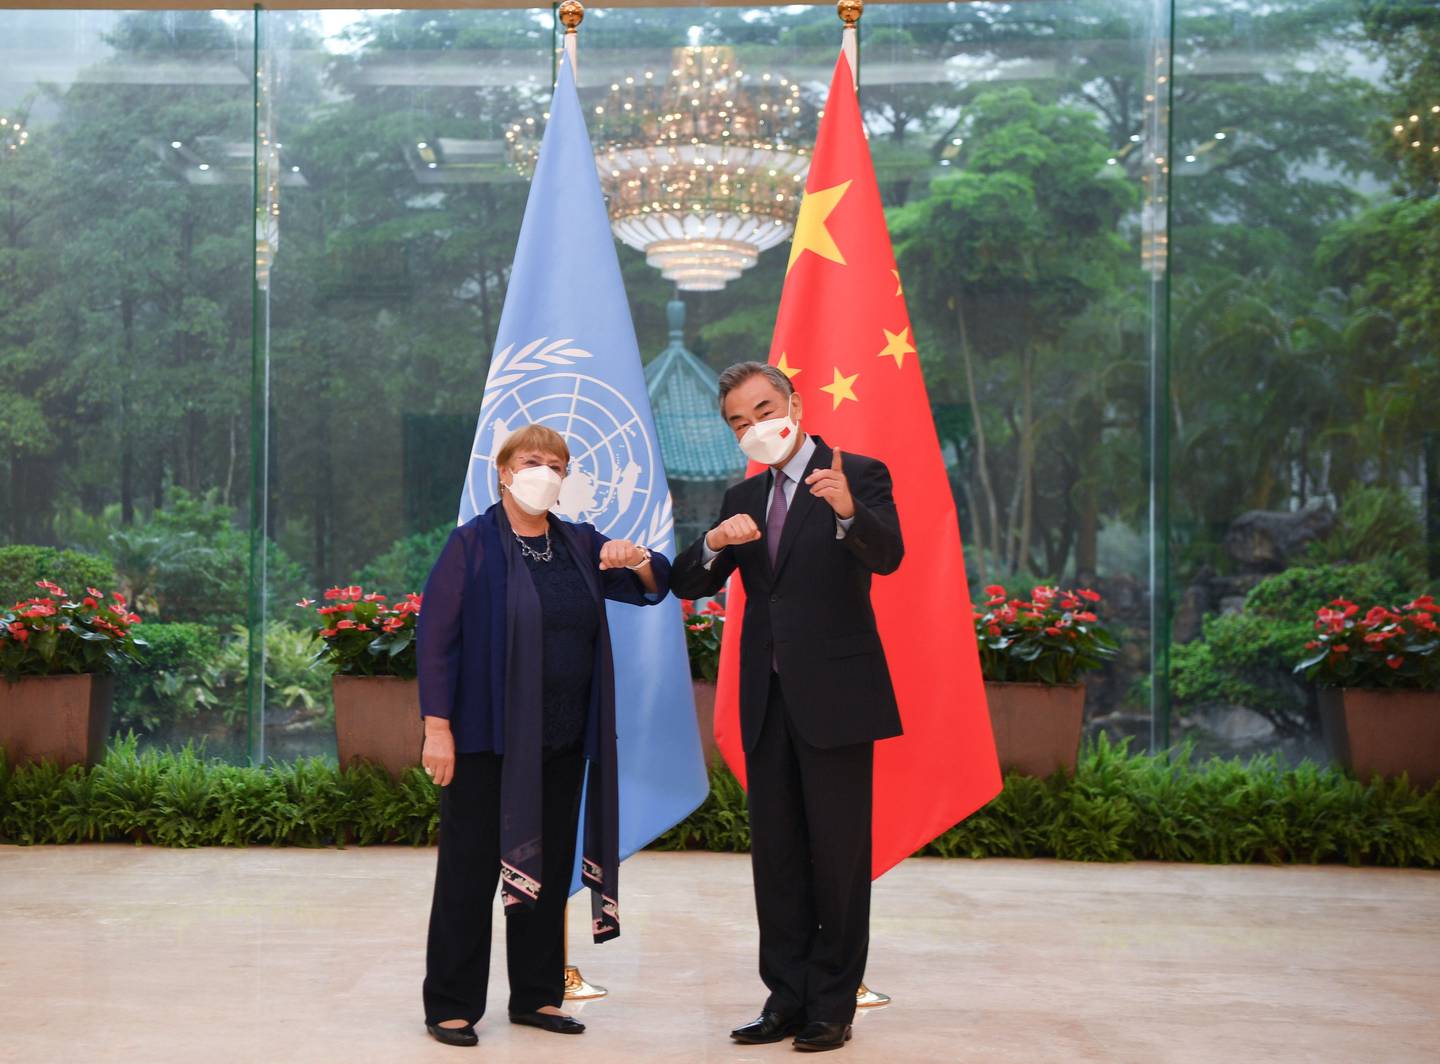 Chefe de direitos humanos da ONU disse que viagem não seria uma “investigação” das práticas chinesas na região de Xinjiang ou em outros lugares